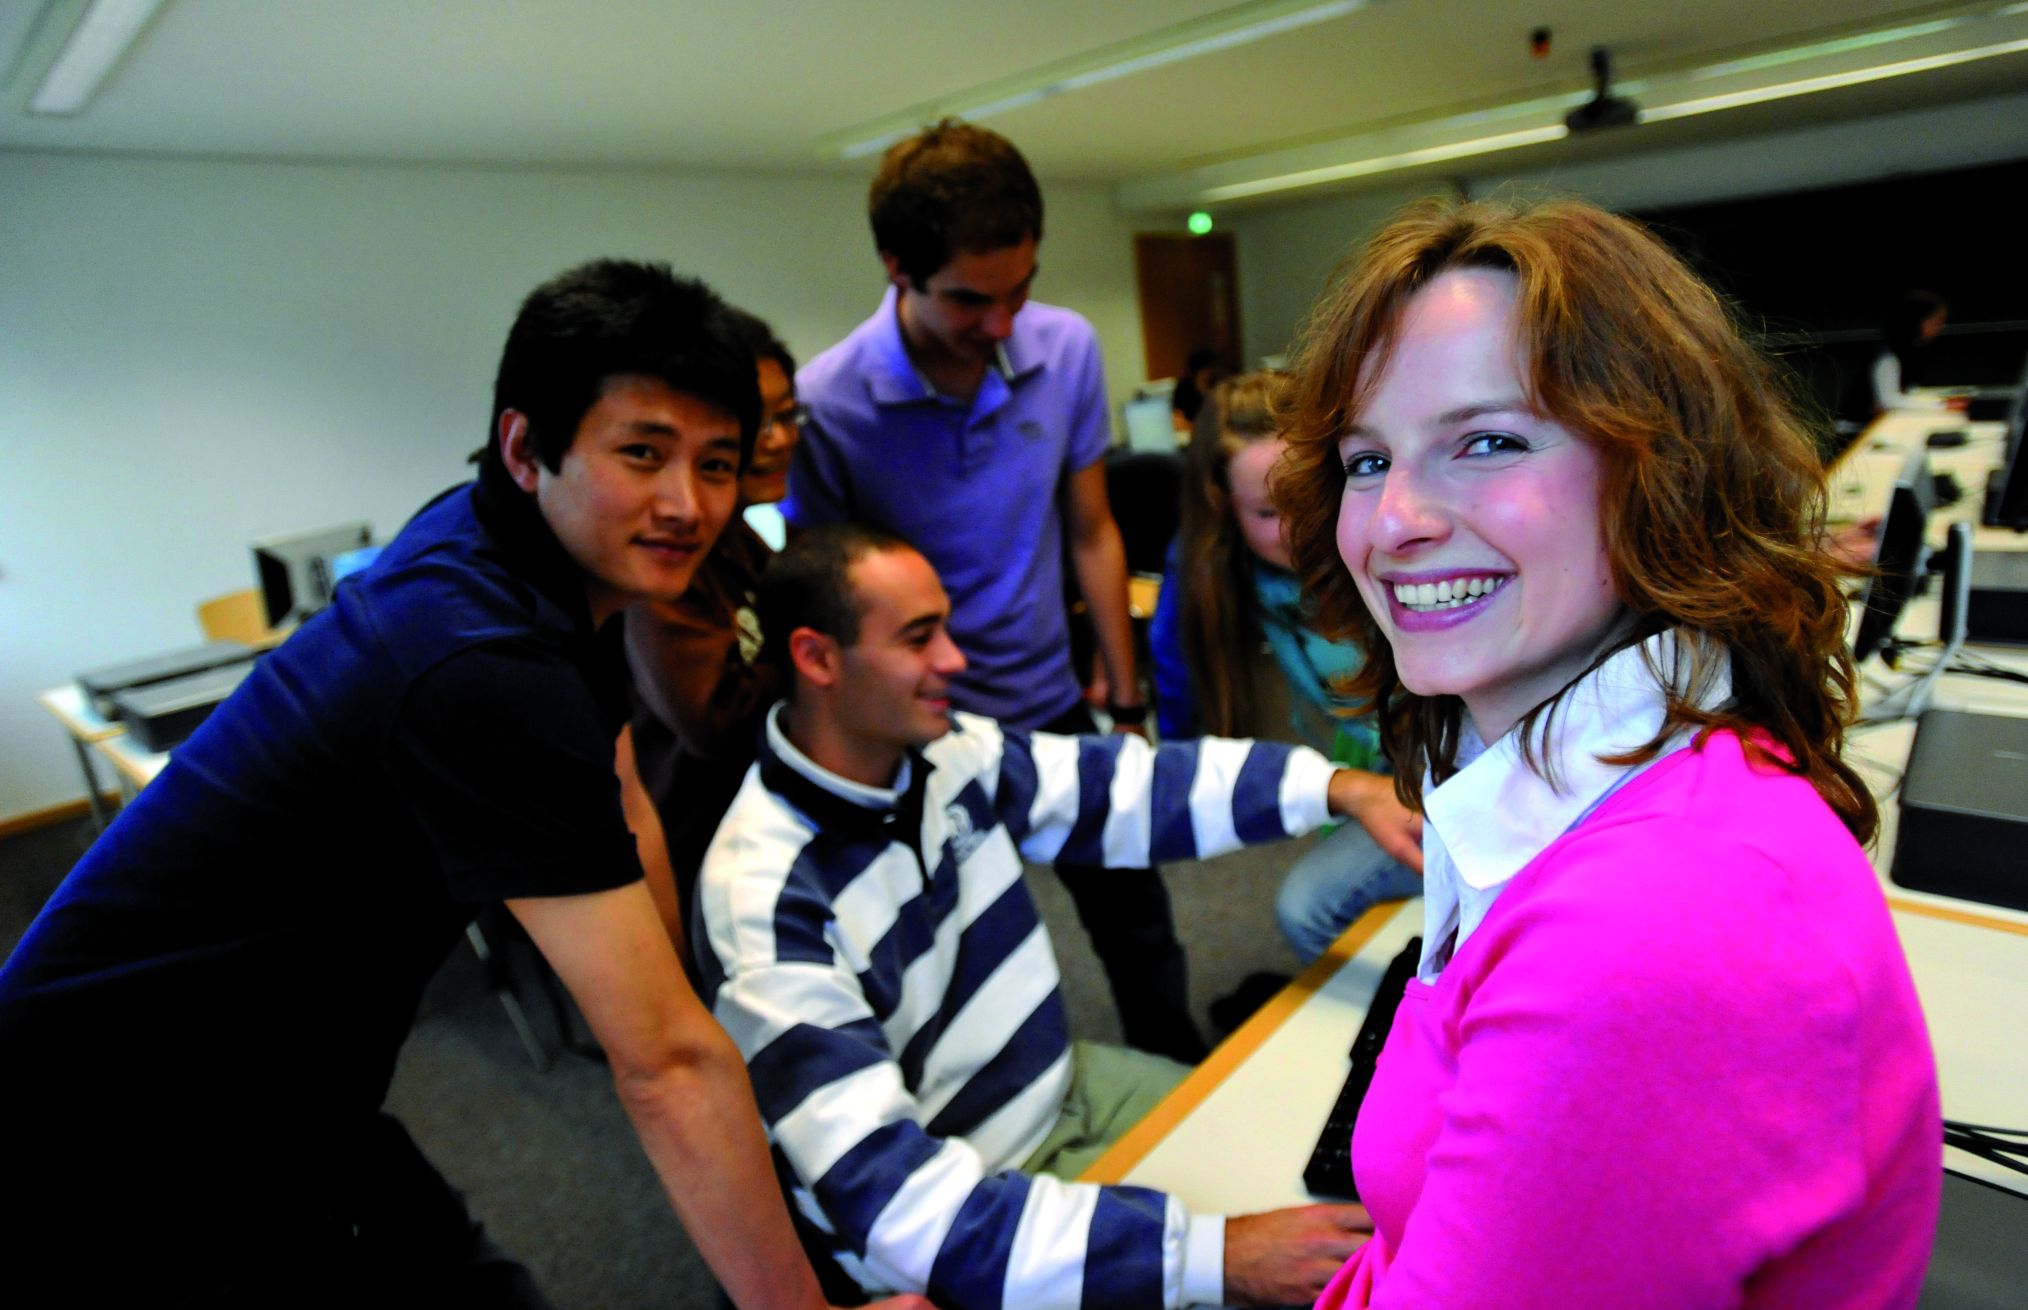 TeilnehmerInnen am tutorenprogramm der Universität Passau